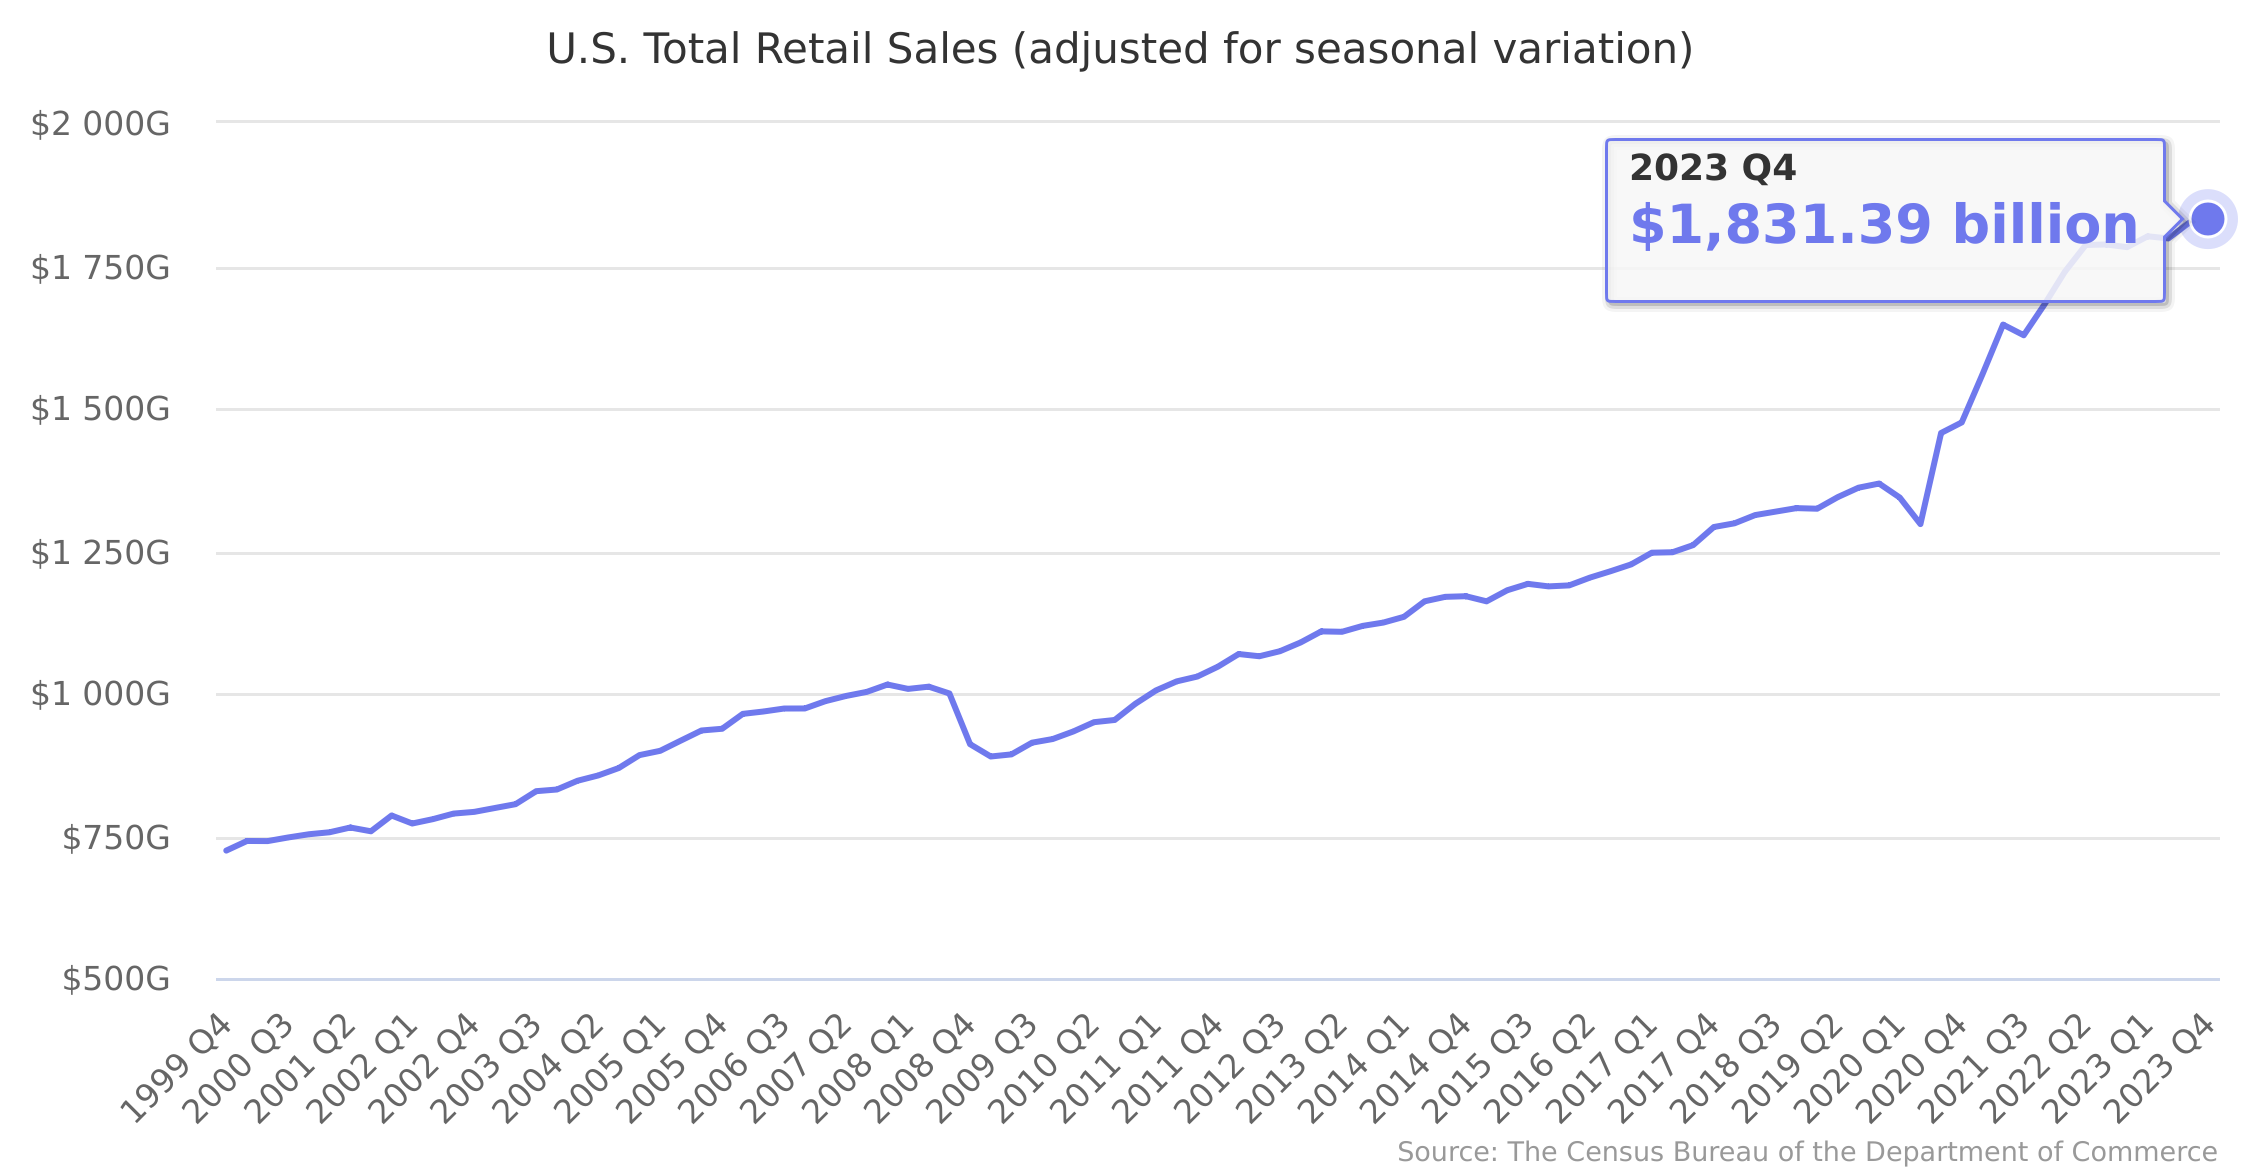 U.S. Total Retail Sales